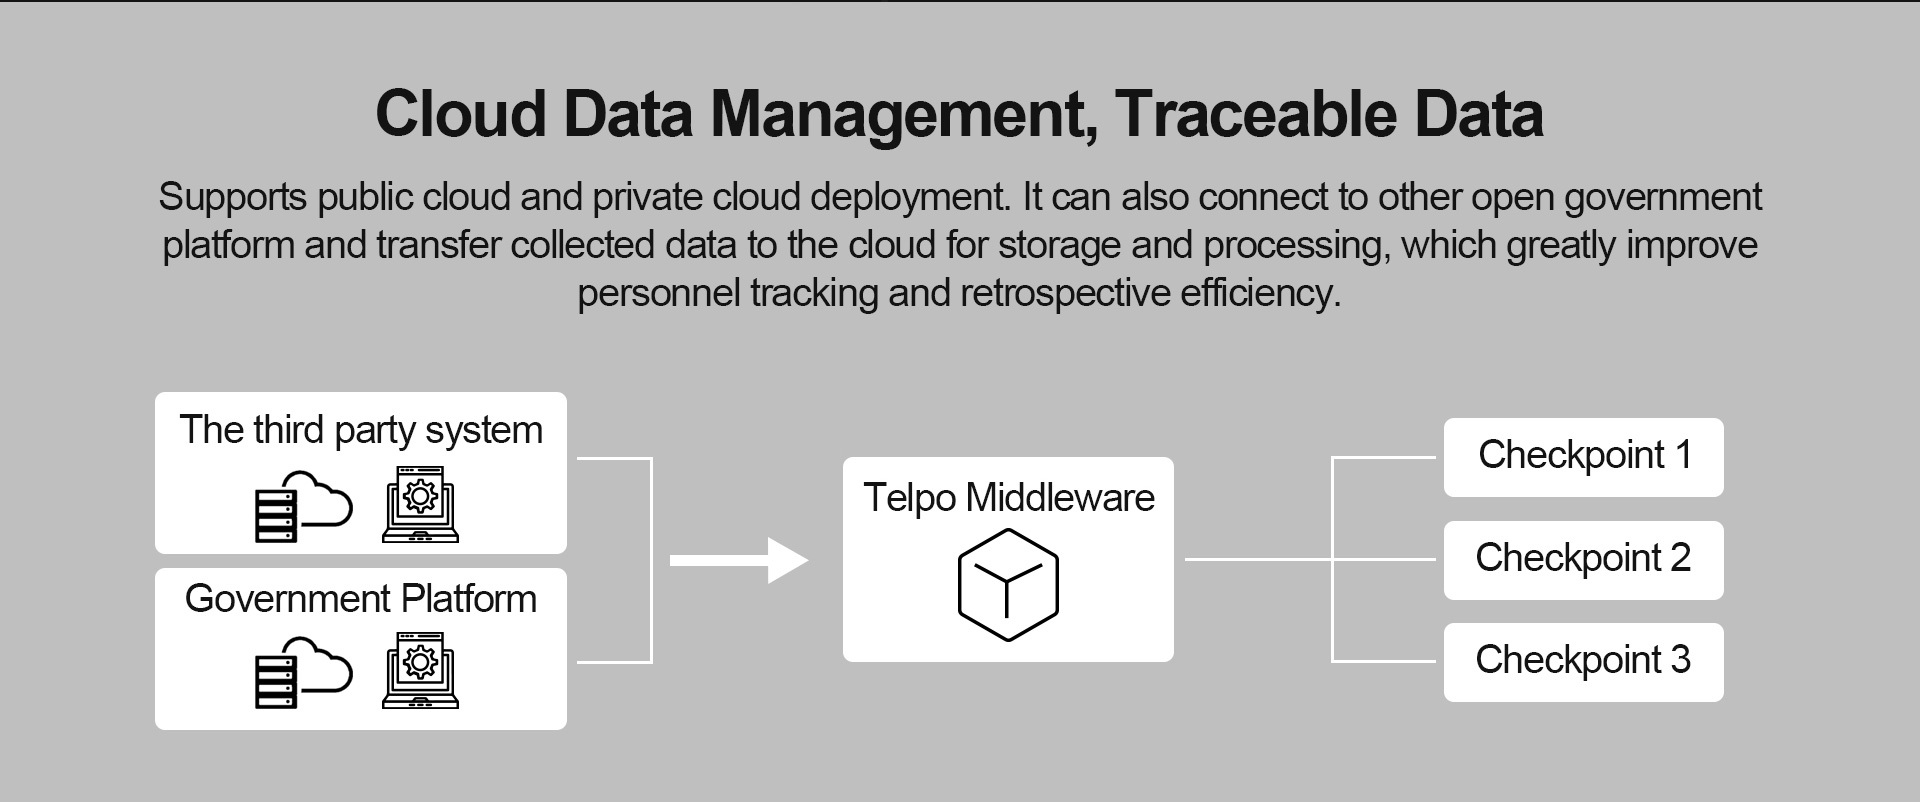 Cloud Data Management, Traceable Data